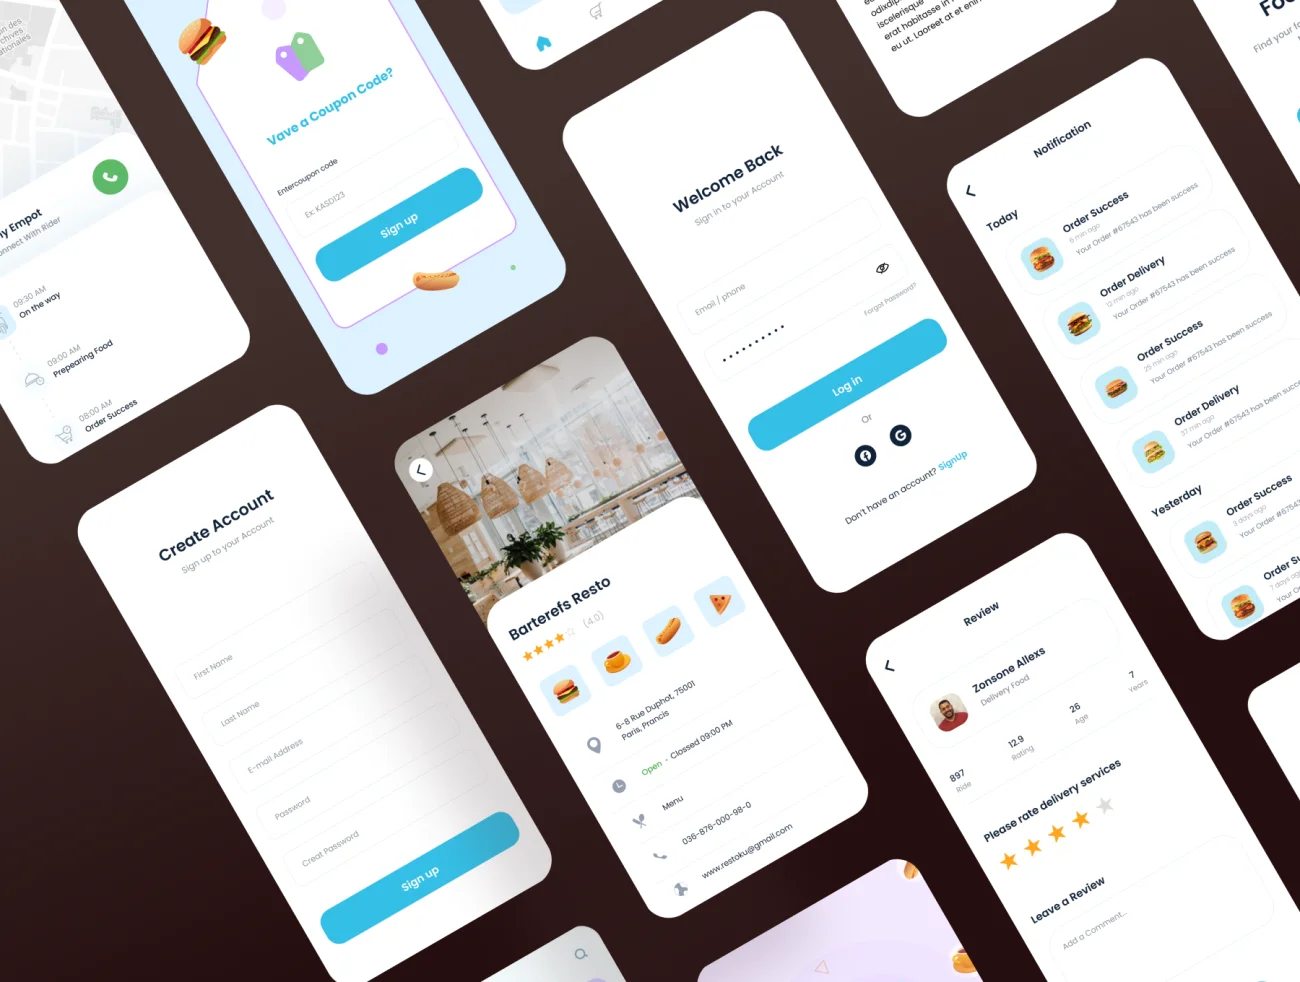 50屏快餐食品应用 Food Burger App .sketch .figma-UI/UX、ui套件、主页、地图、应用、支付、网购、表单、预订-到位啦UI